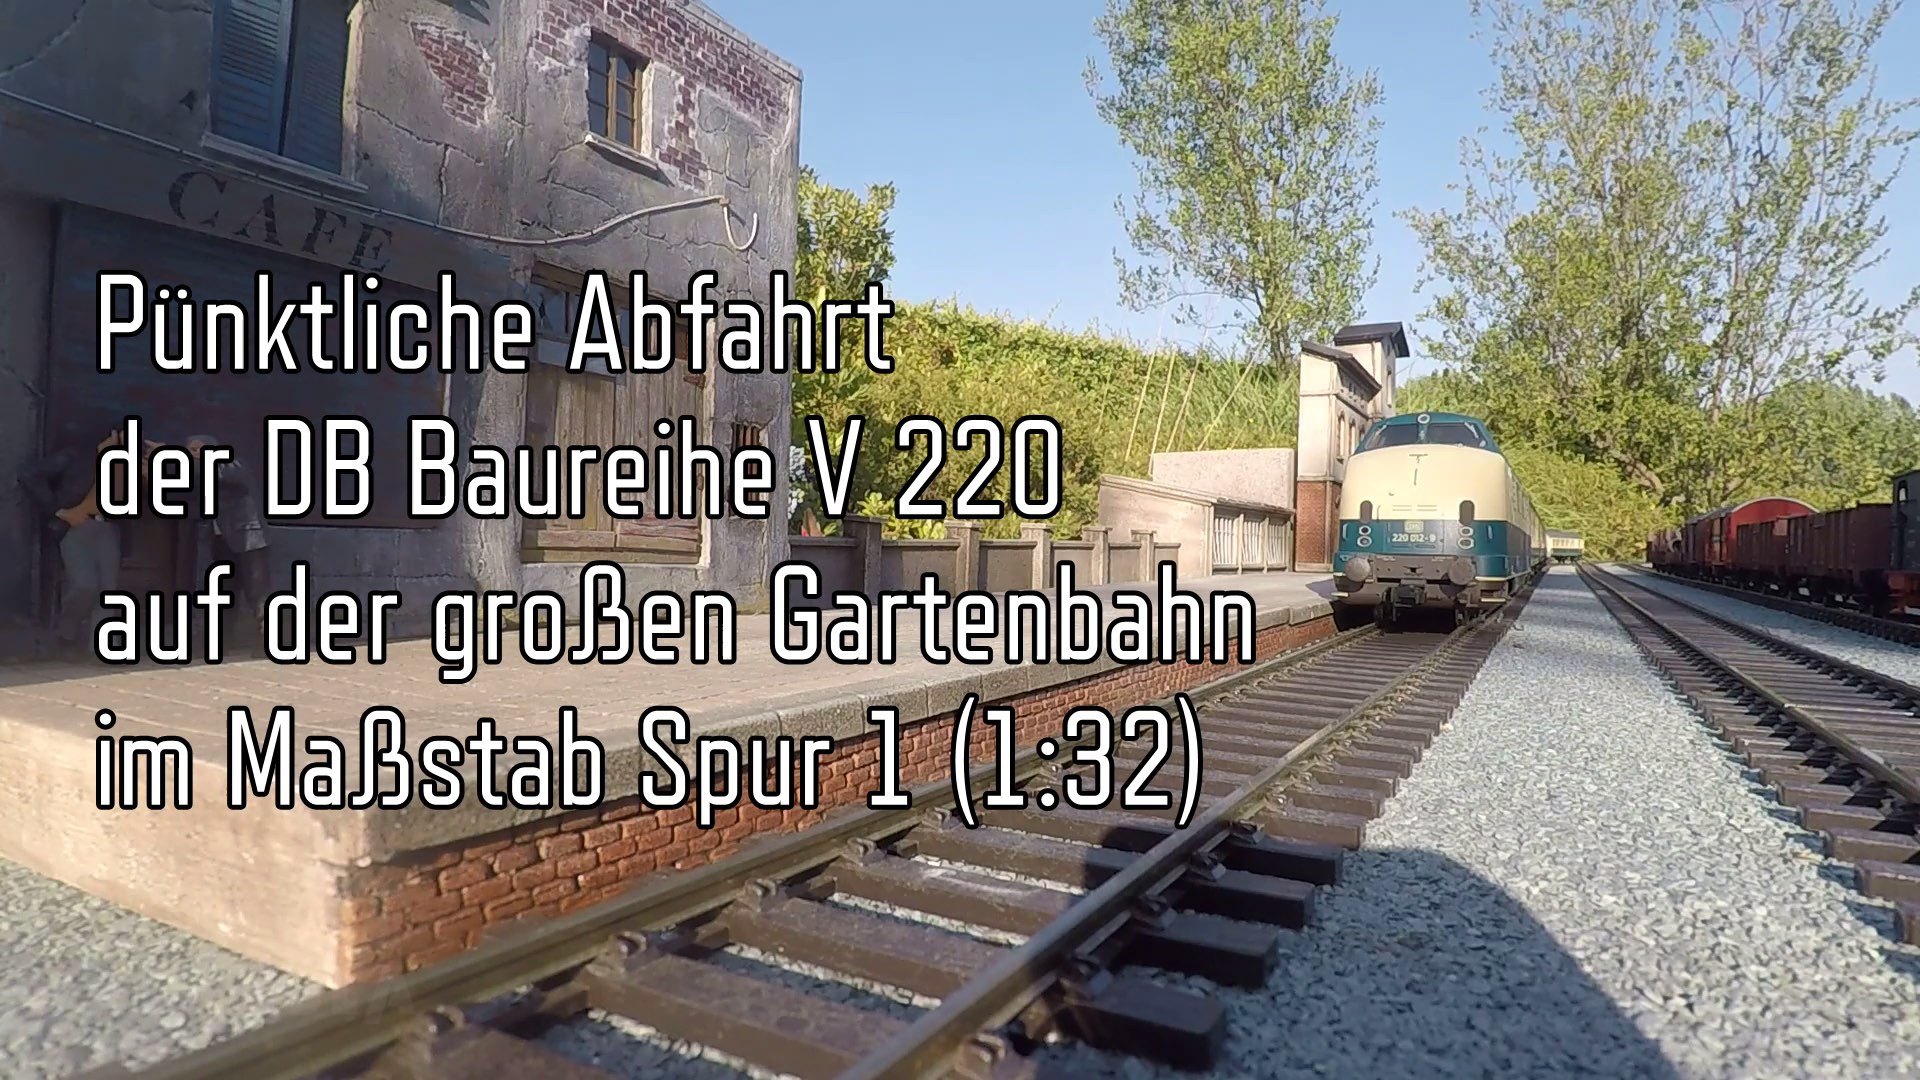 Gartenbahn: Pünktliche Abfahrt der DB Baureihe V 200 bzw. V 220 im Maßstab Spur 1 (1:32) von Märklin